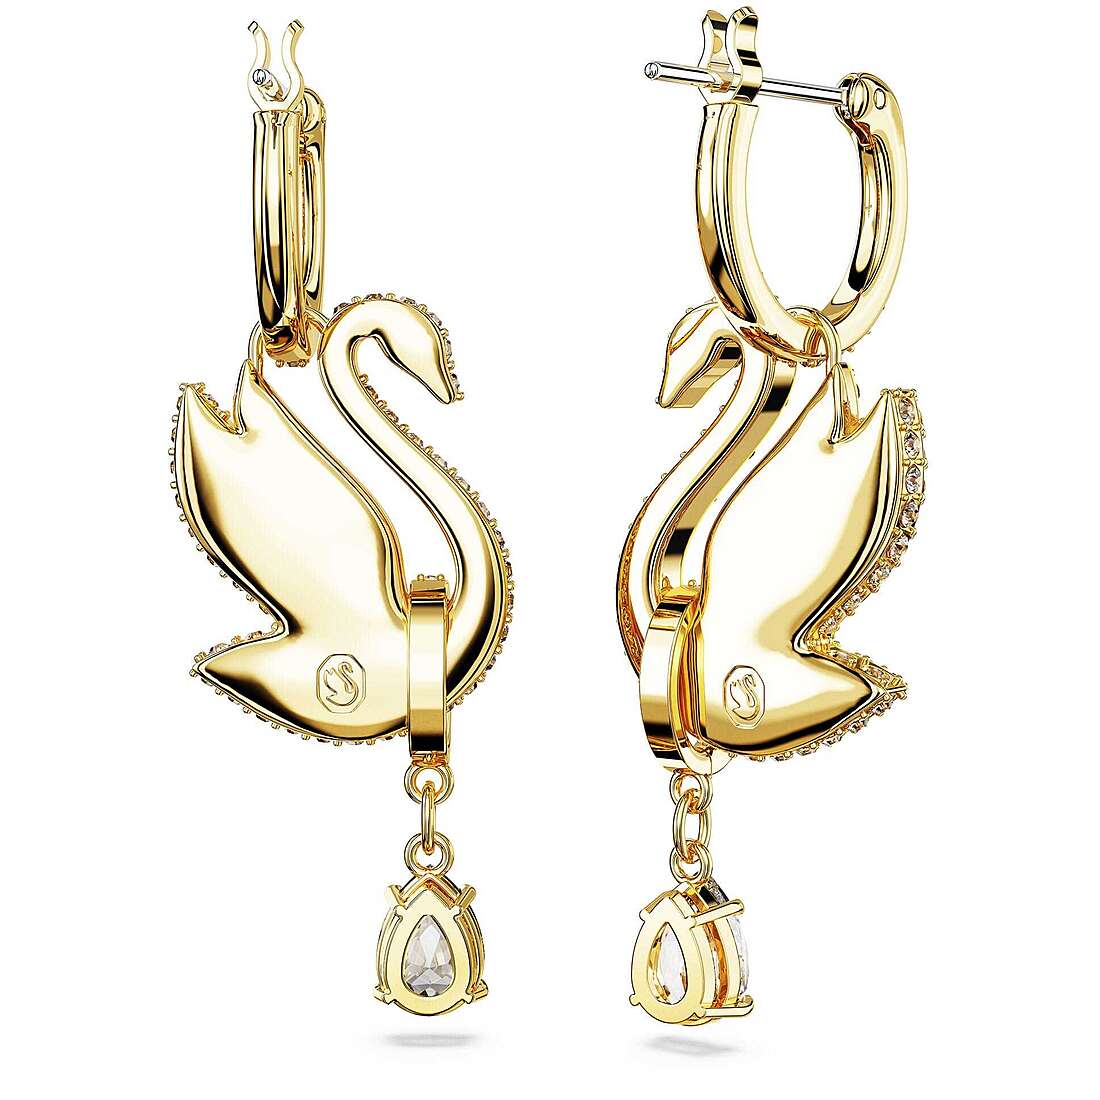 ear-rings woman jewellery Swarovski 5647543